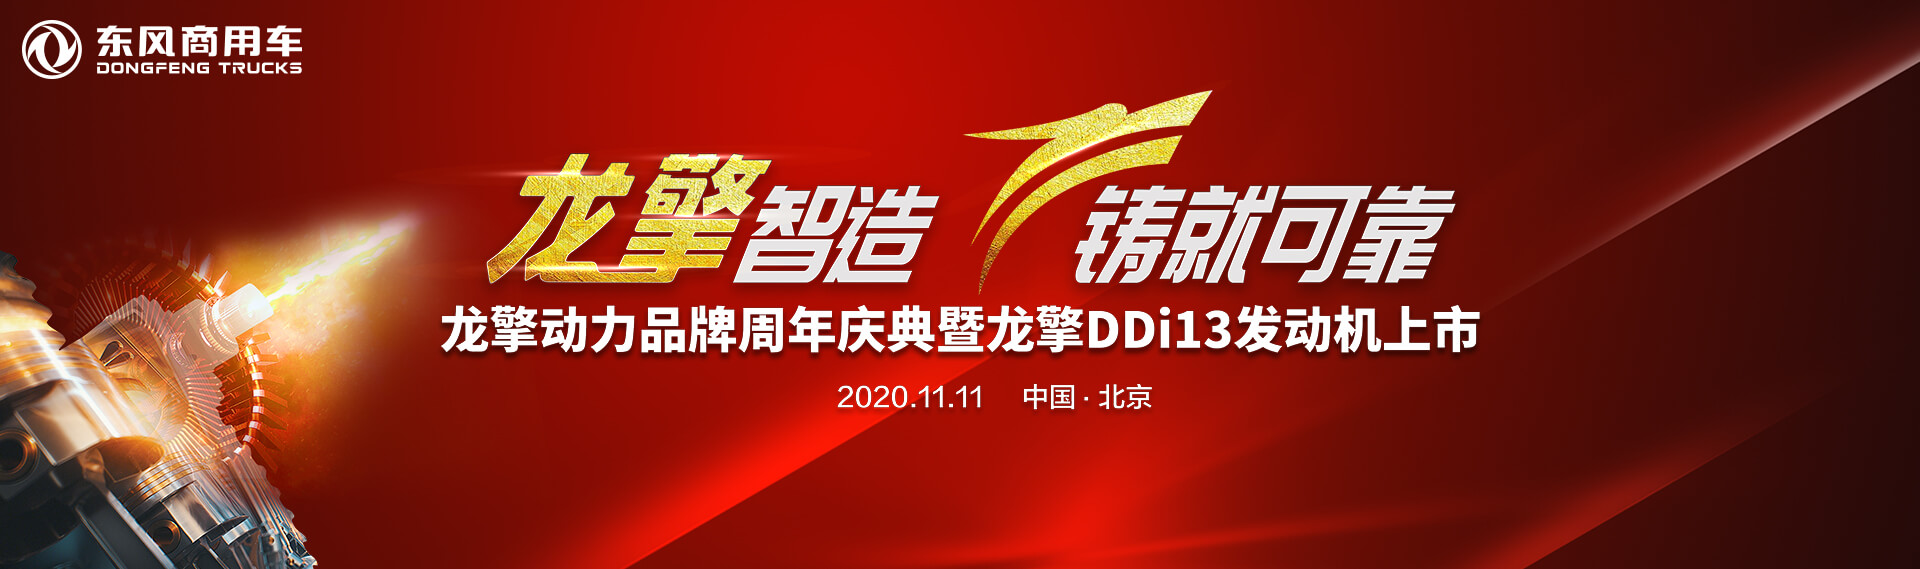 龙擎动力品牌周年庆典暨龙擎DDi13发动机上市